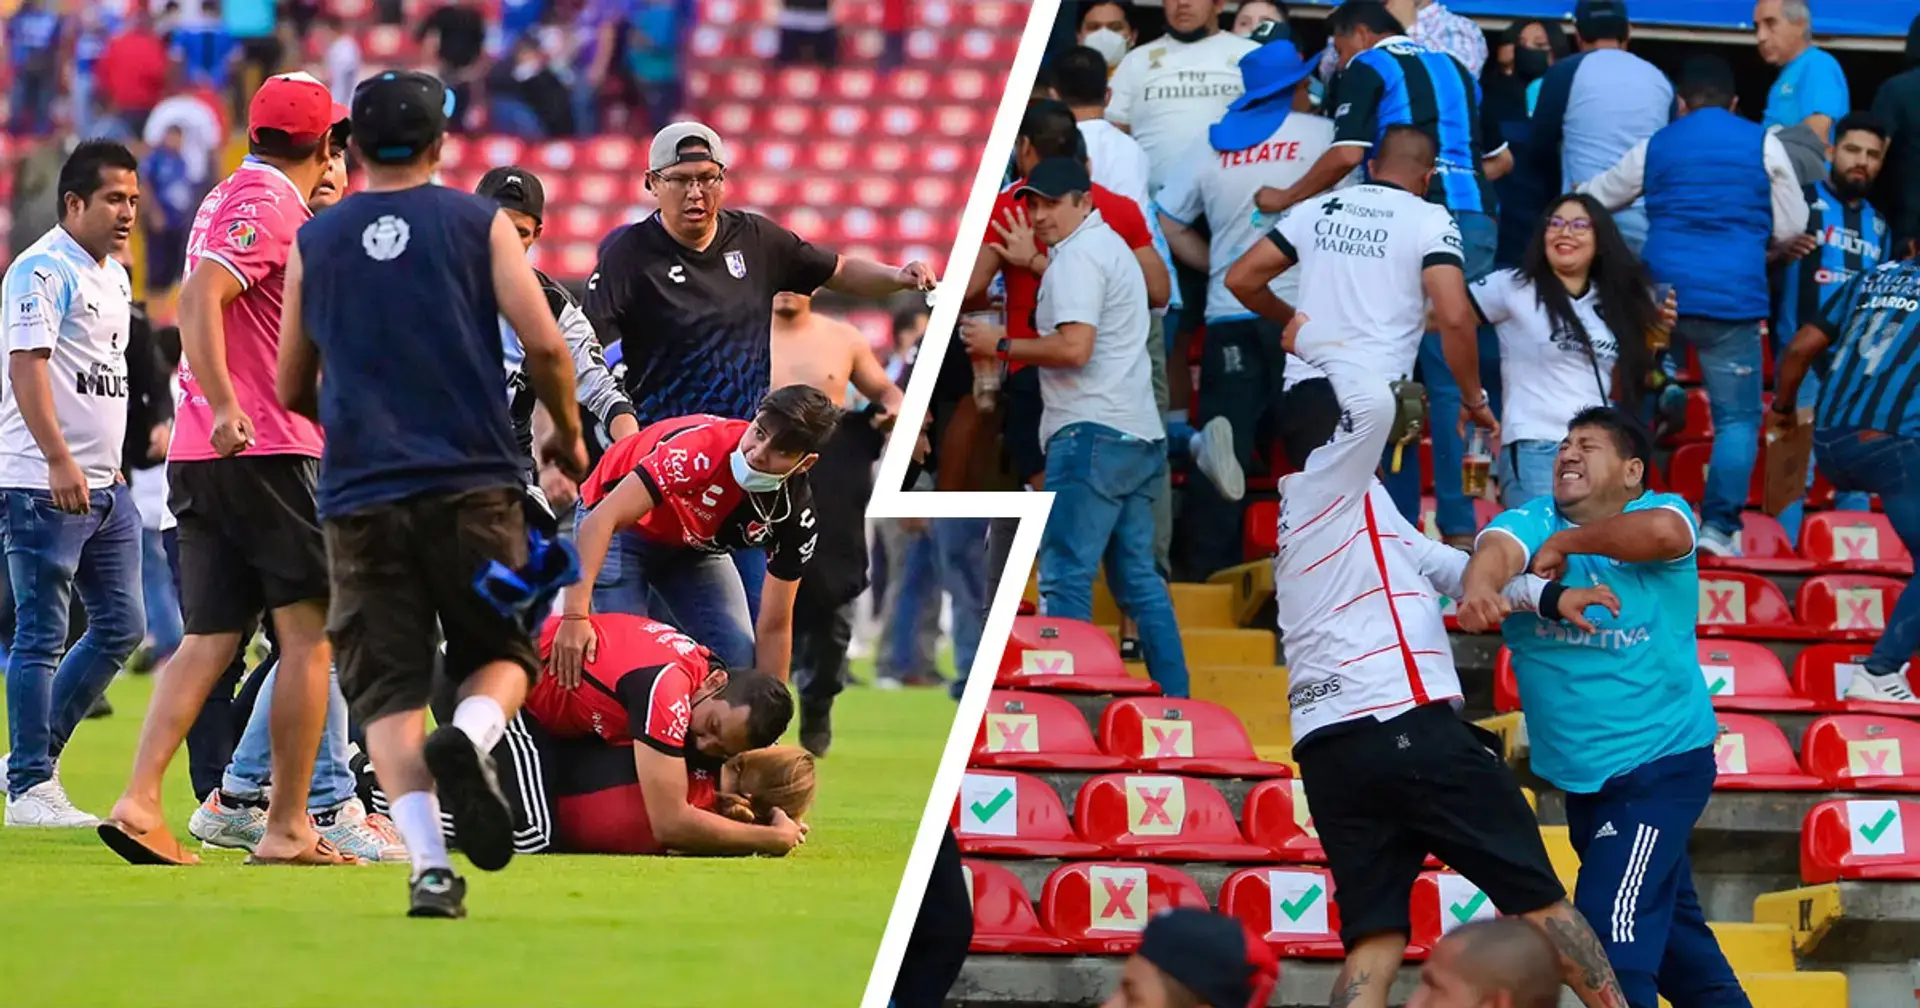  Según los informes, 17 personas murieron en una pelea de aficionados durante un partido importante de la Liga Mexicana entre Atlas FC y Queretaro FC